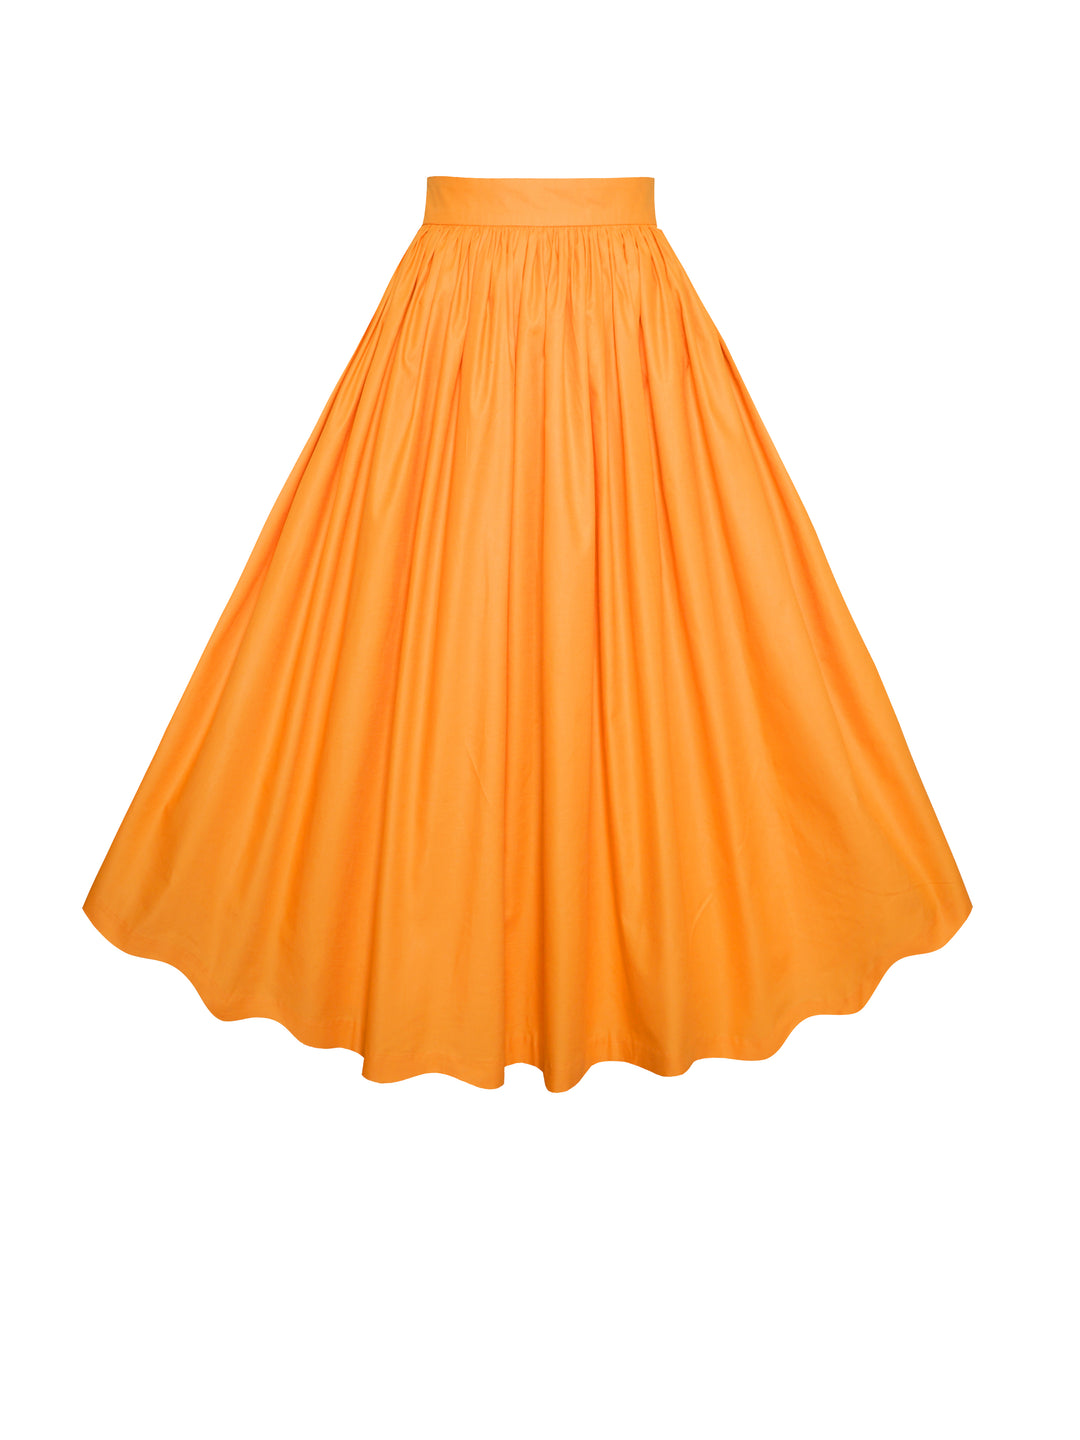 MTO - Lola Skirt Pumpkin Orange Cotton